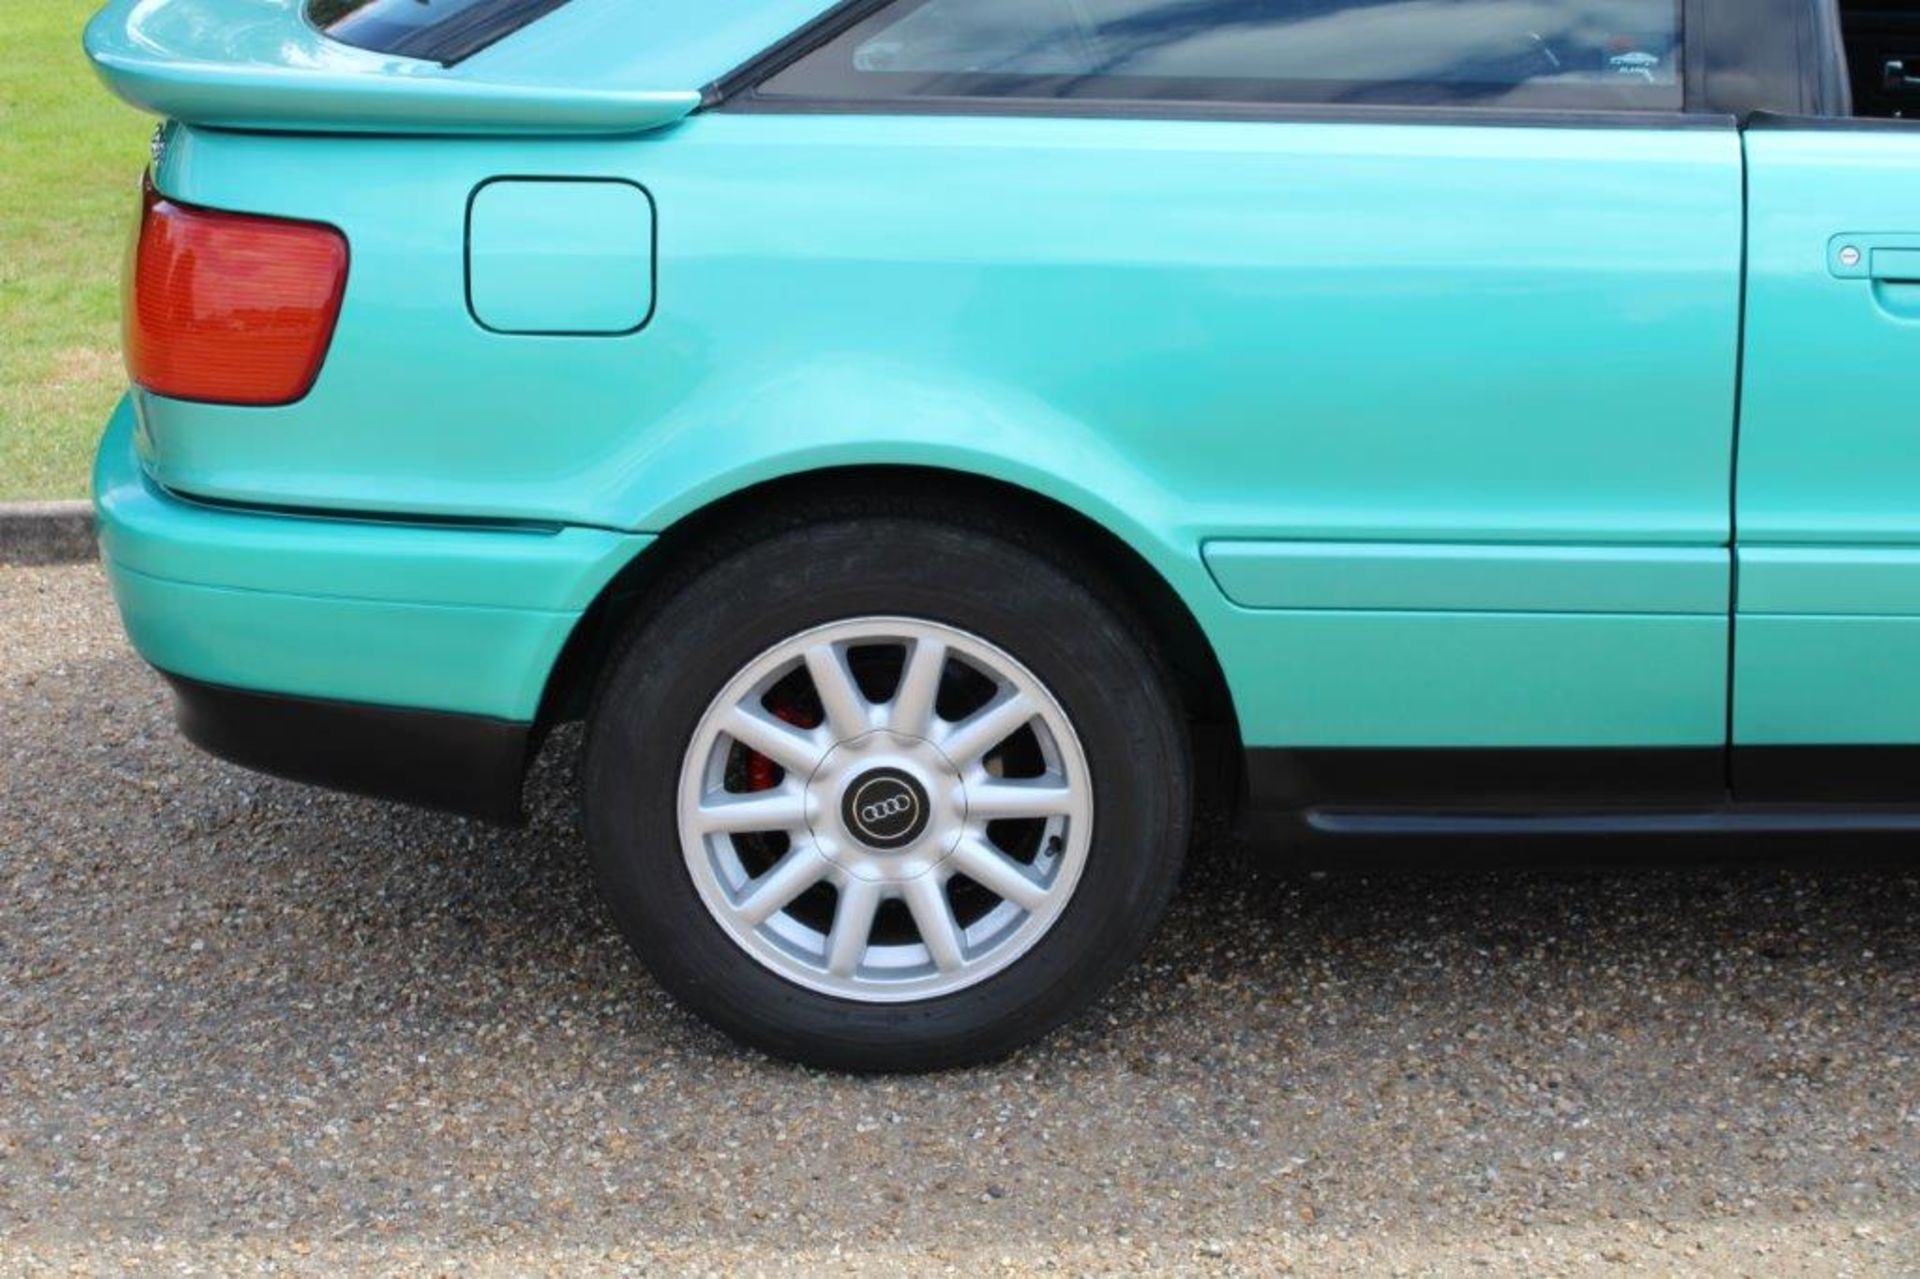 1994 Audi Coupe 2.6E - Image 19 of 20